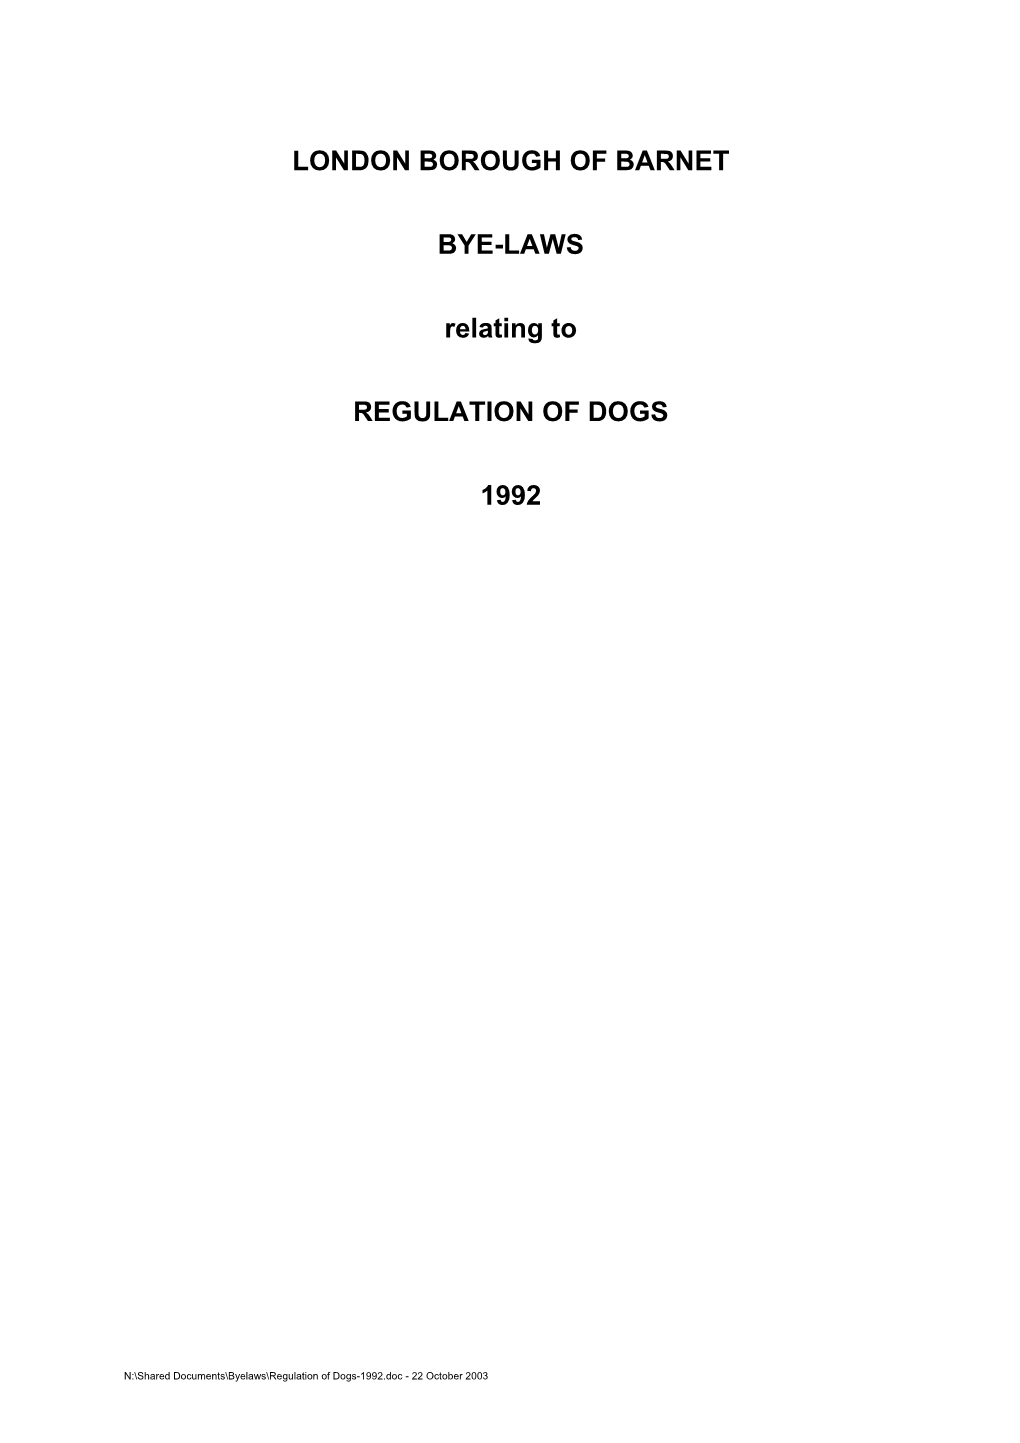 Regulations of Dogs